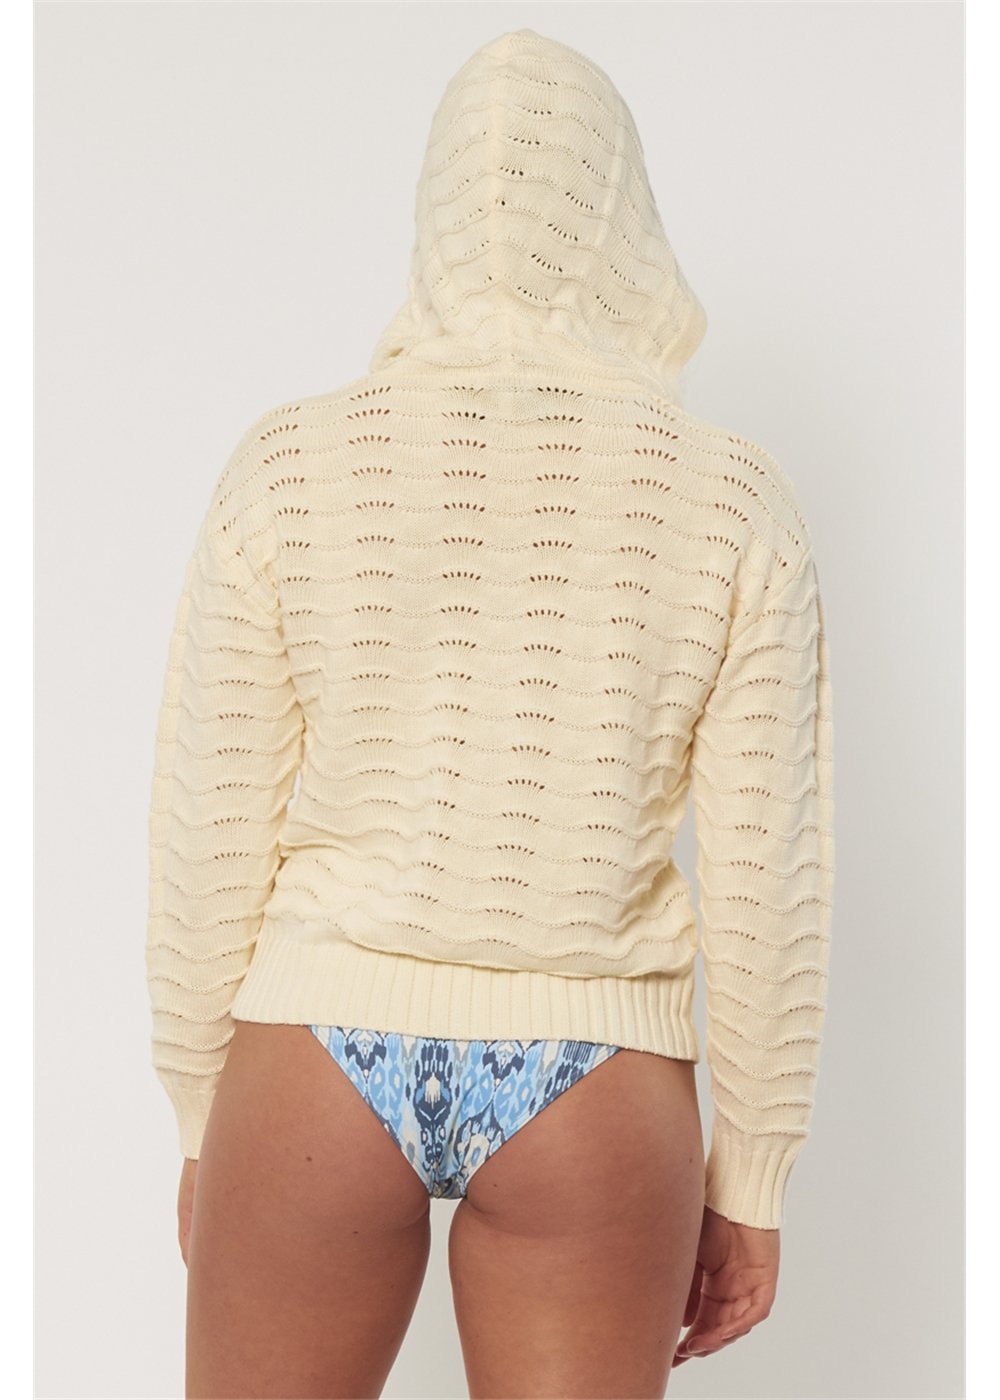 Aria L/S Knit Sweater